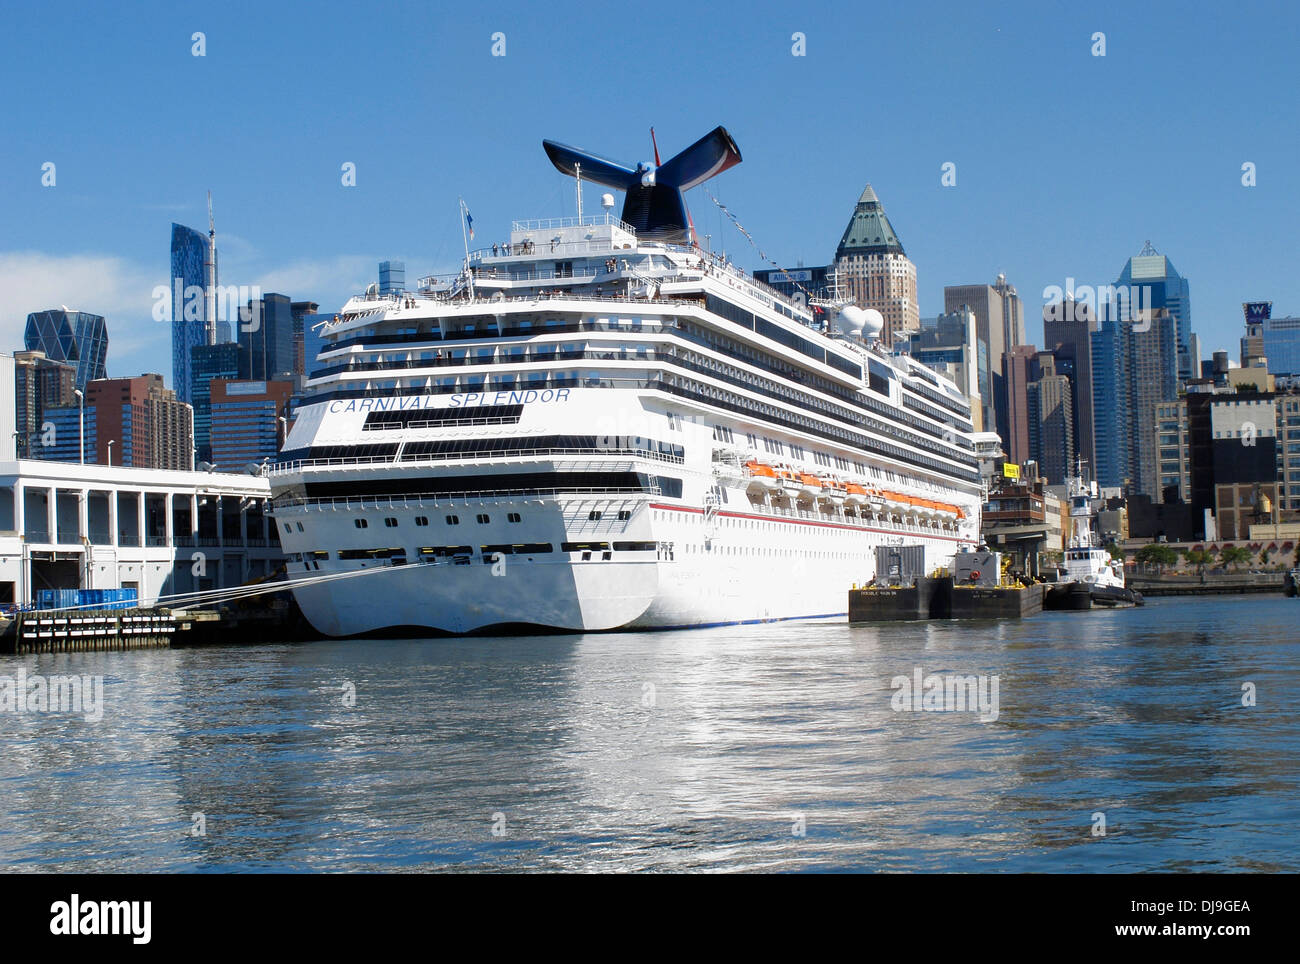 Carnival Splendor crucero anclado en el puerto de Nueva York, EE.UU. Foto de stock